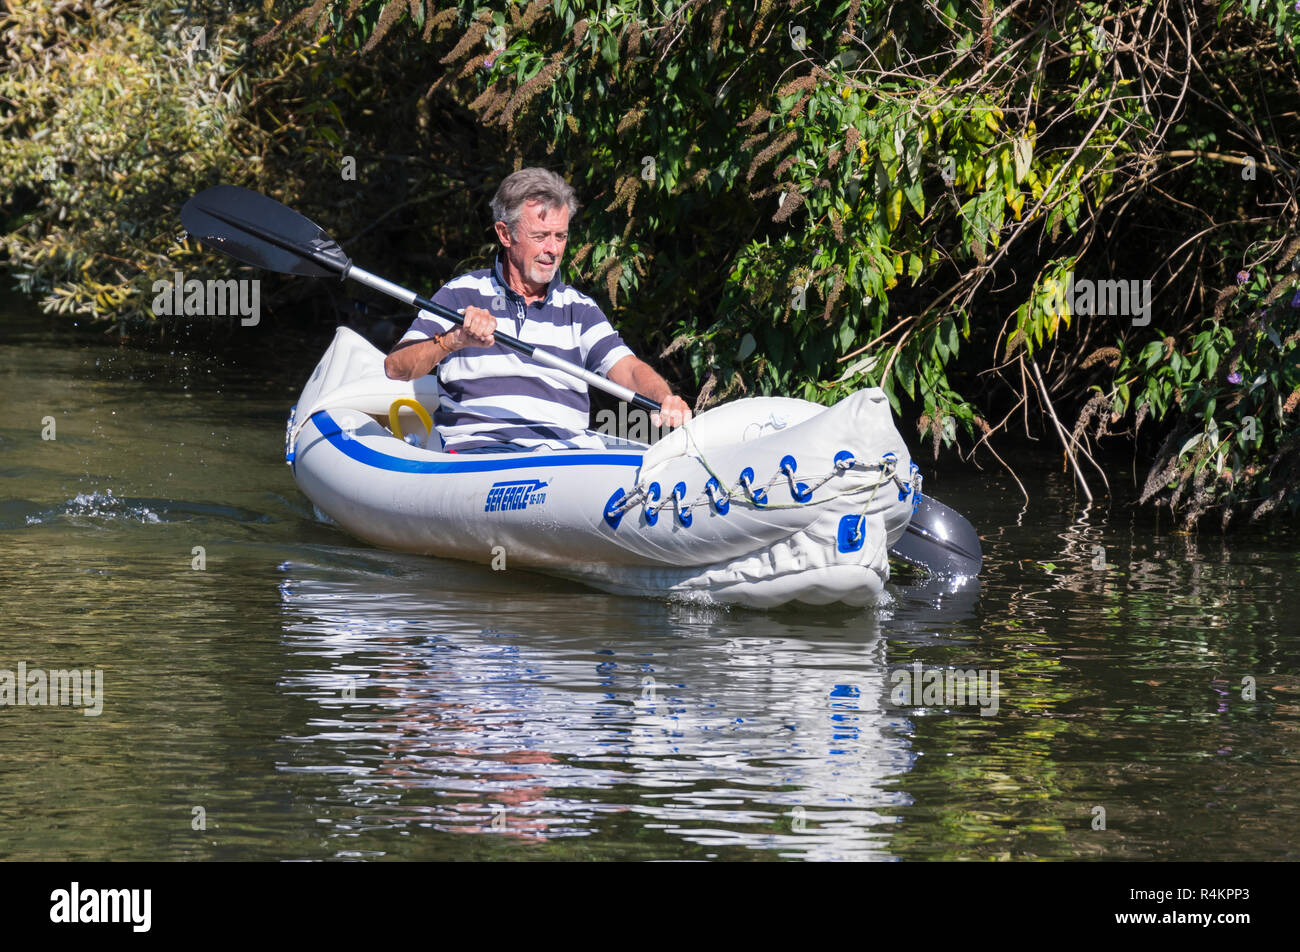 Un varón de mediana edad remando con un remo de doble hoja en un Águila de Mar SE-370 kayak inflable, en un canal en el Reino Unido. Foto de stock